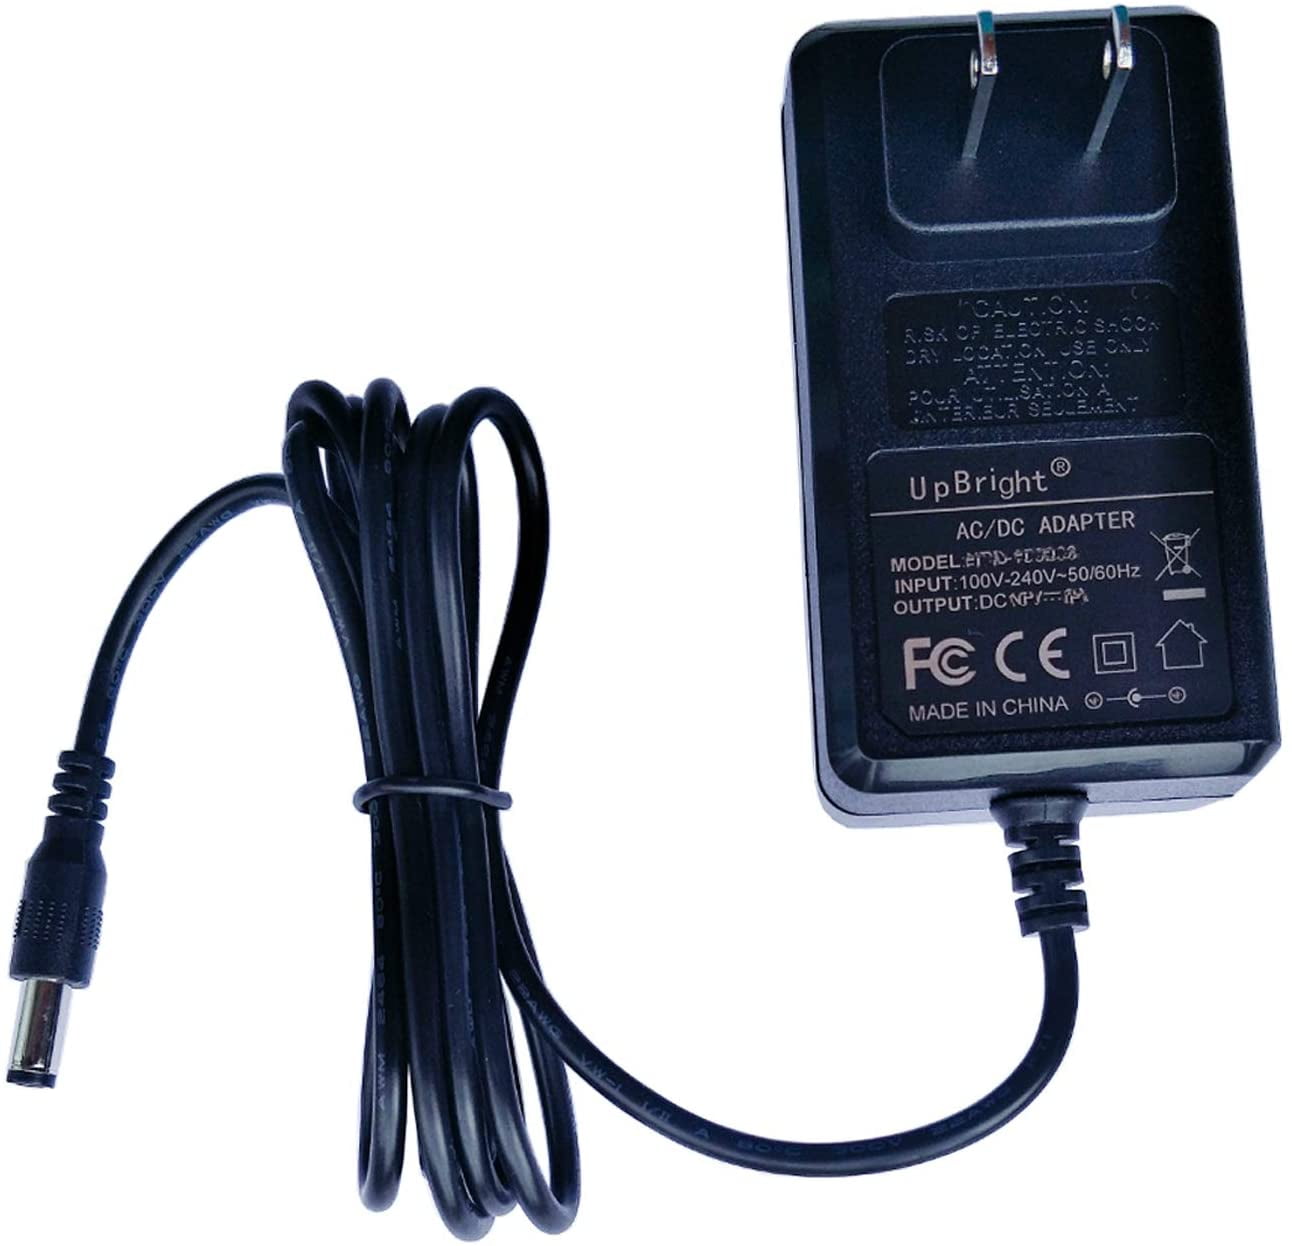 AC/DC Adapter For Polaroid Z2300 Z2300W Z2300B Instant Print Digital Camera PSU 